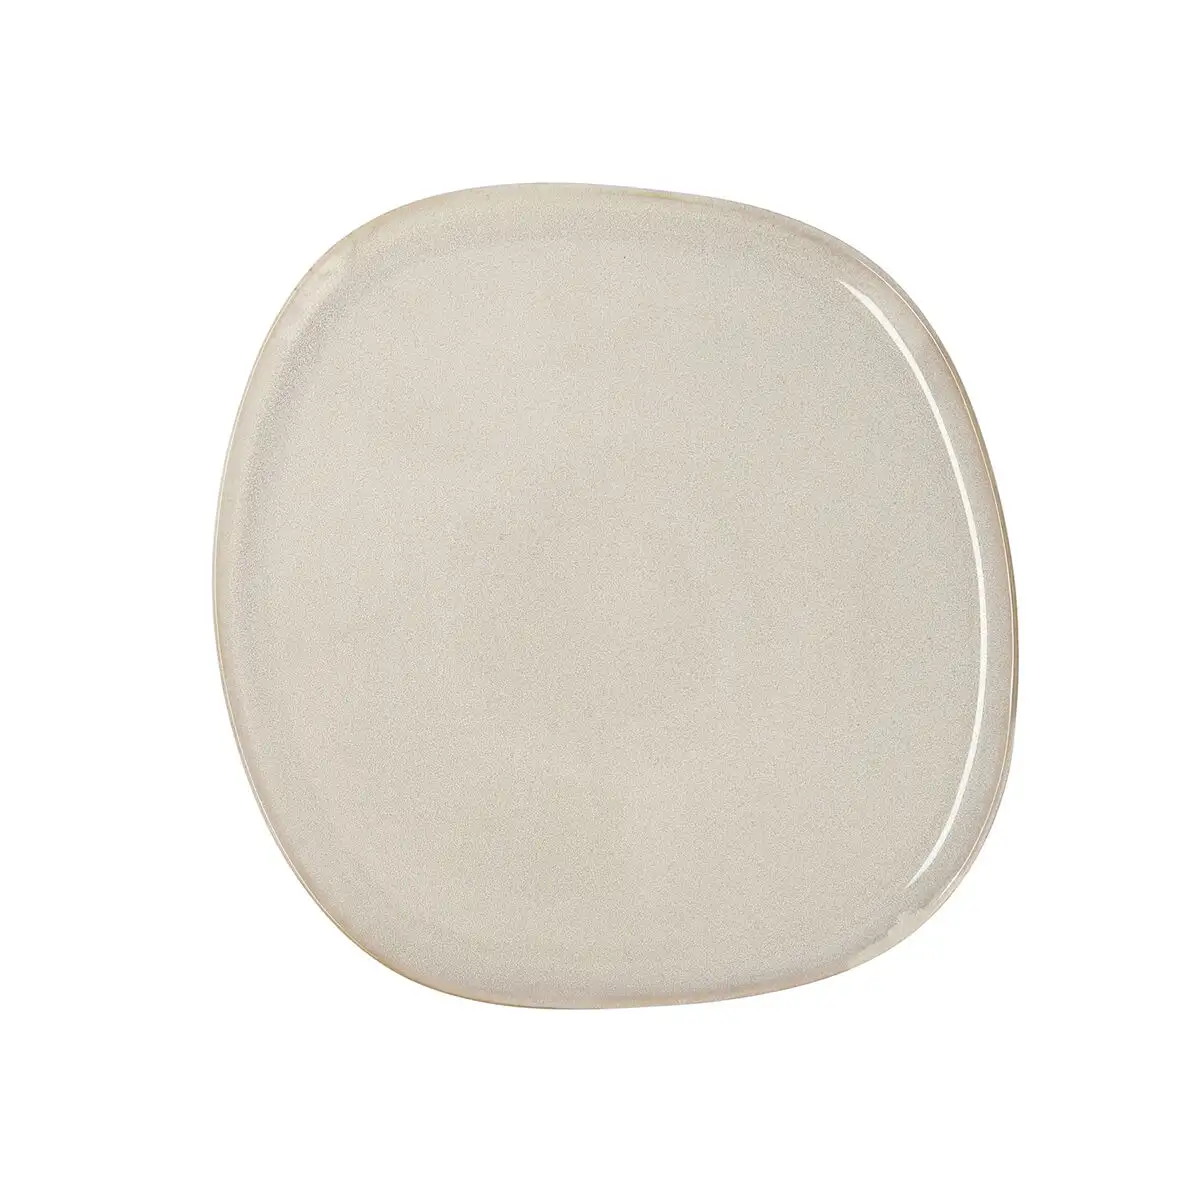 Assiette plate bidasoa ikonic ceramique blanc 26 5 x 25 7 x 1 5 cm pack 4x _8247. DIAYTAR SENEGAL - L'Art de Vivre le Shopping Inspiré. Parcourez notre catalogue et choisissez des produits qui reflètent votre passion pour la beauté et l'authenticité.